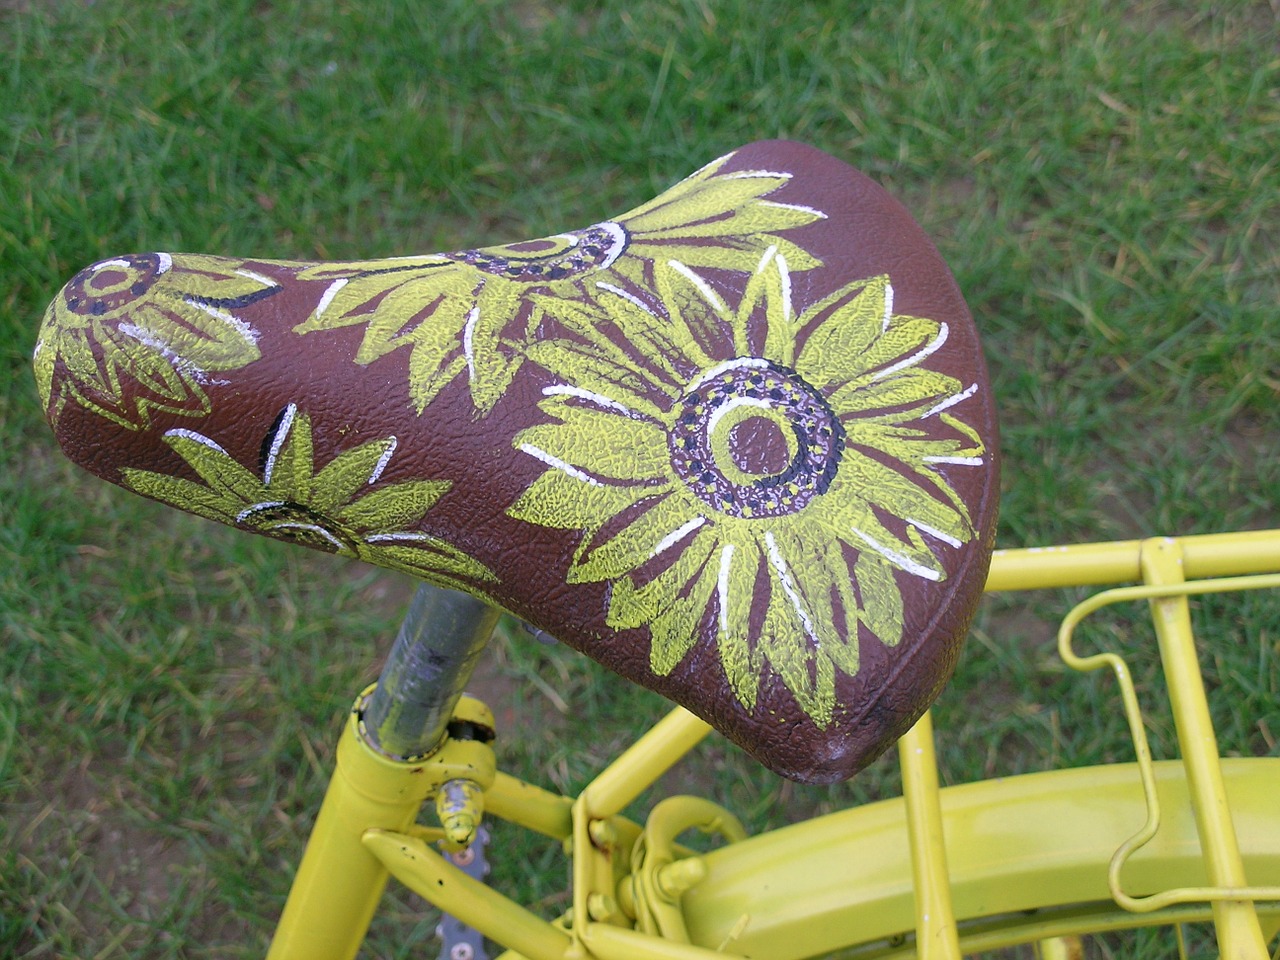 saddle bicycle flowers free photo